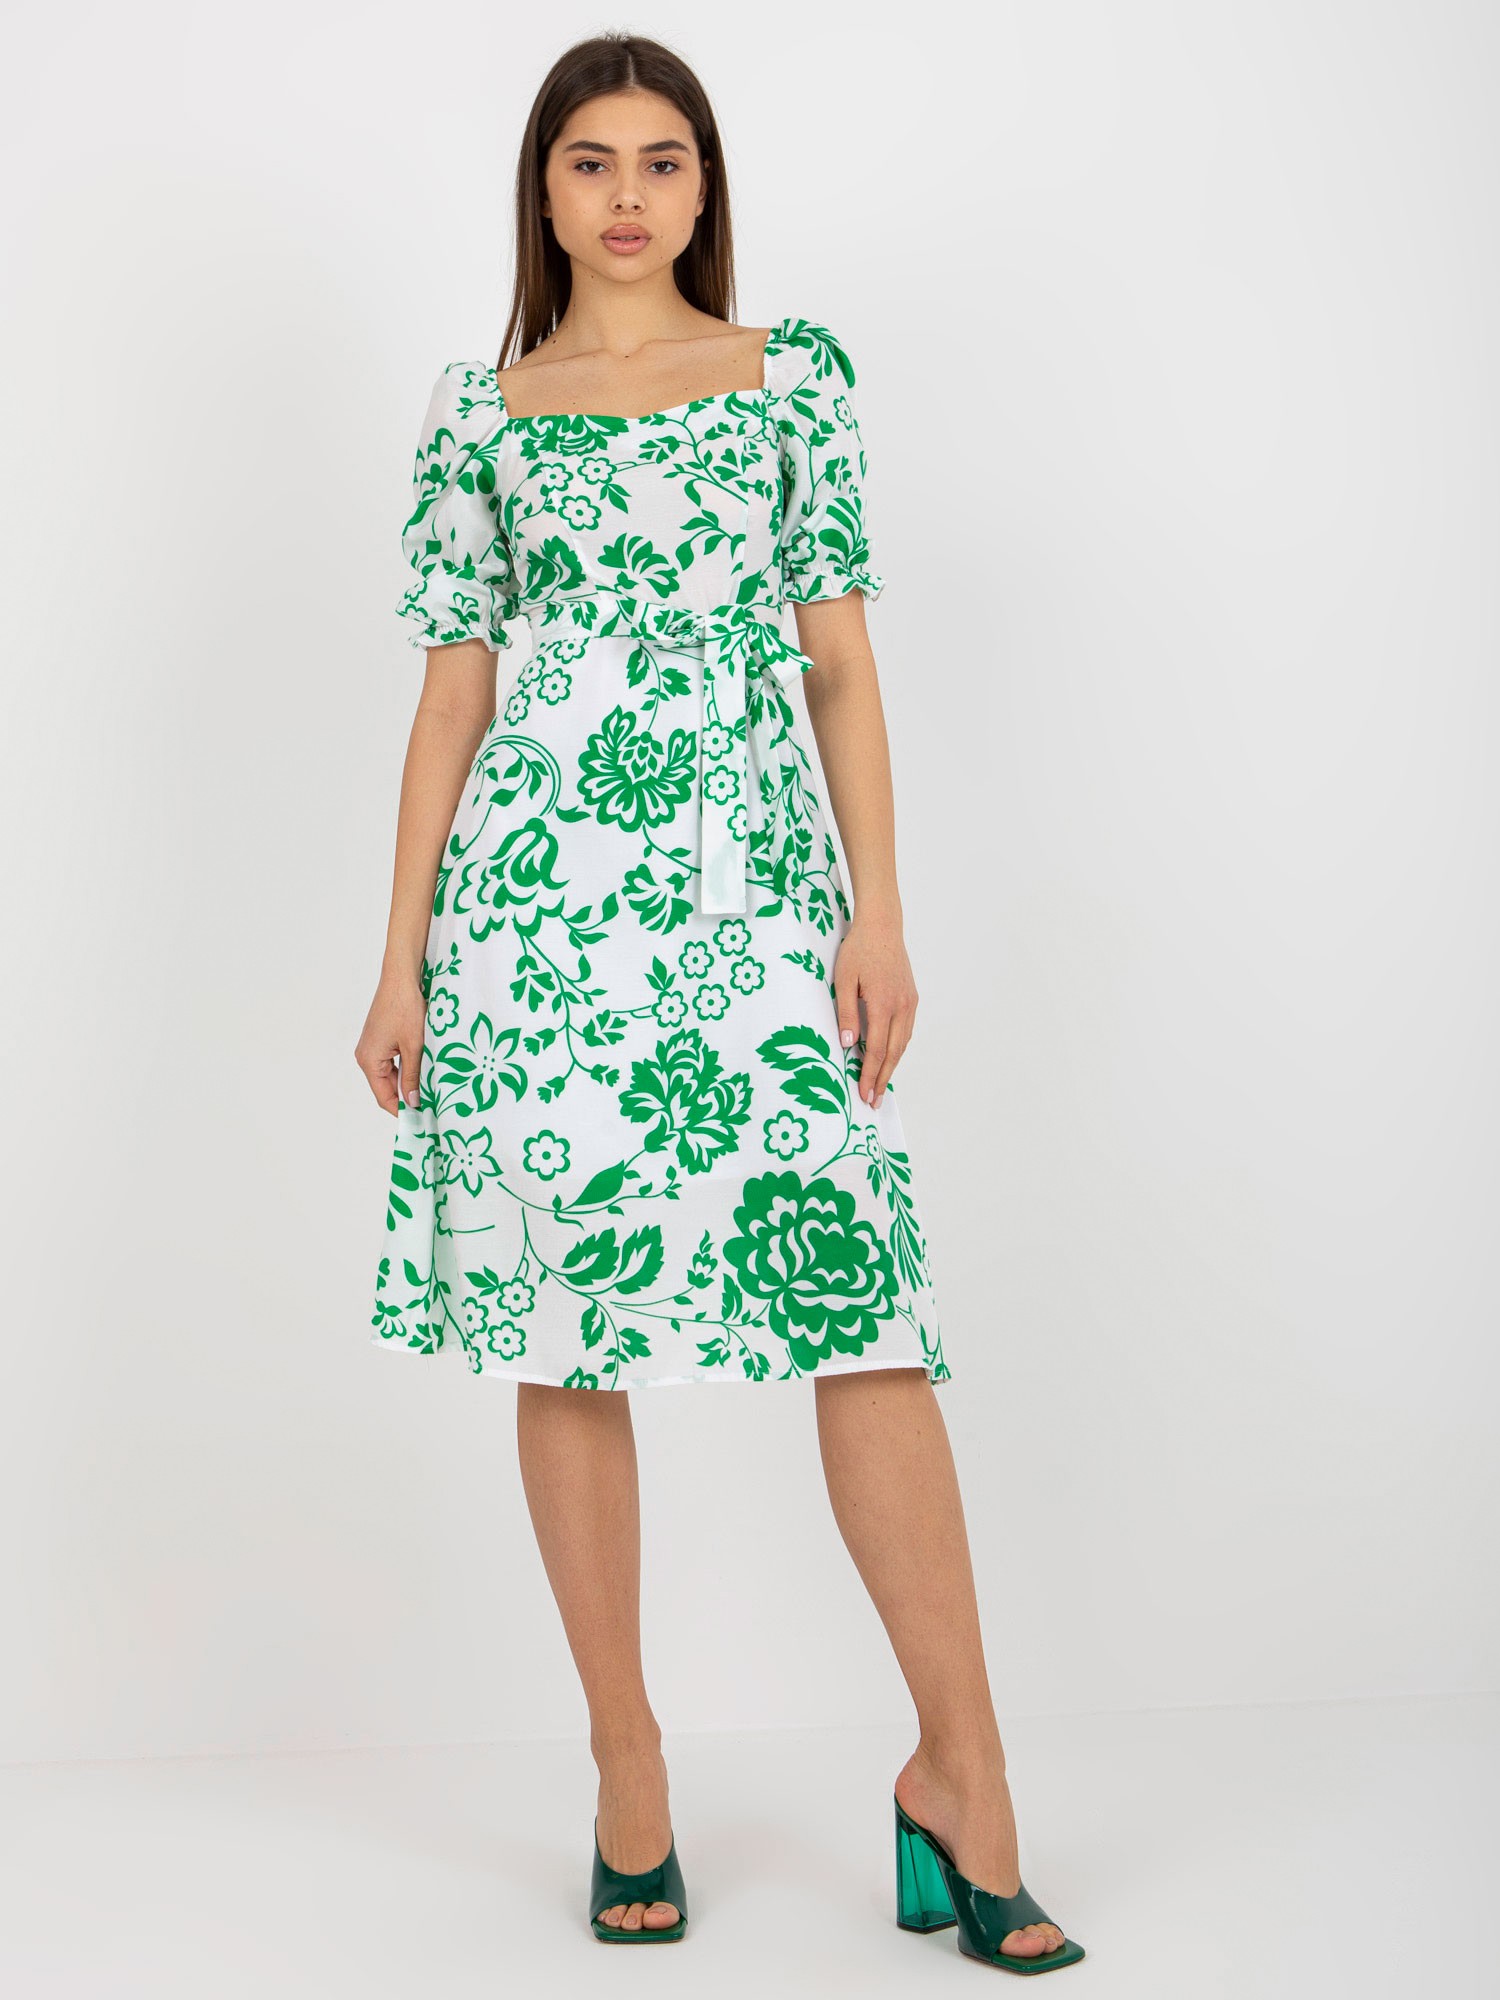 Bílo-zelené květované midi šaty s páskem LK-SK-508944.45P-white-green Velikost: 42